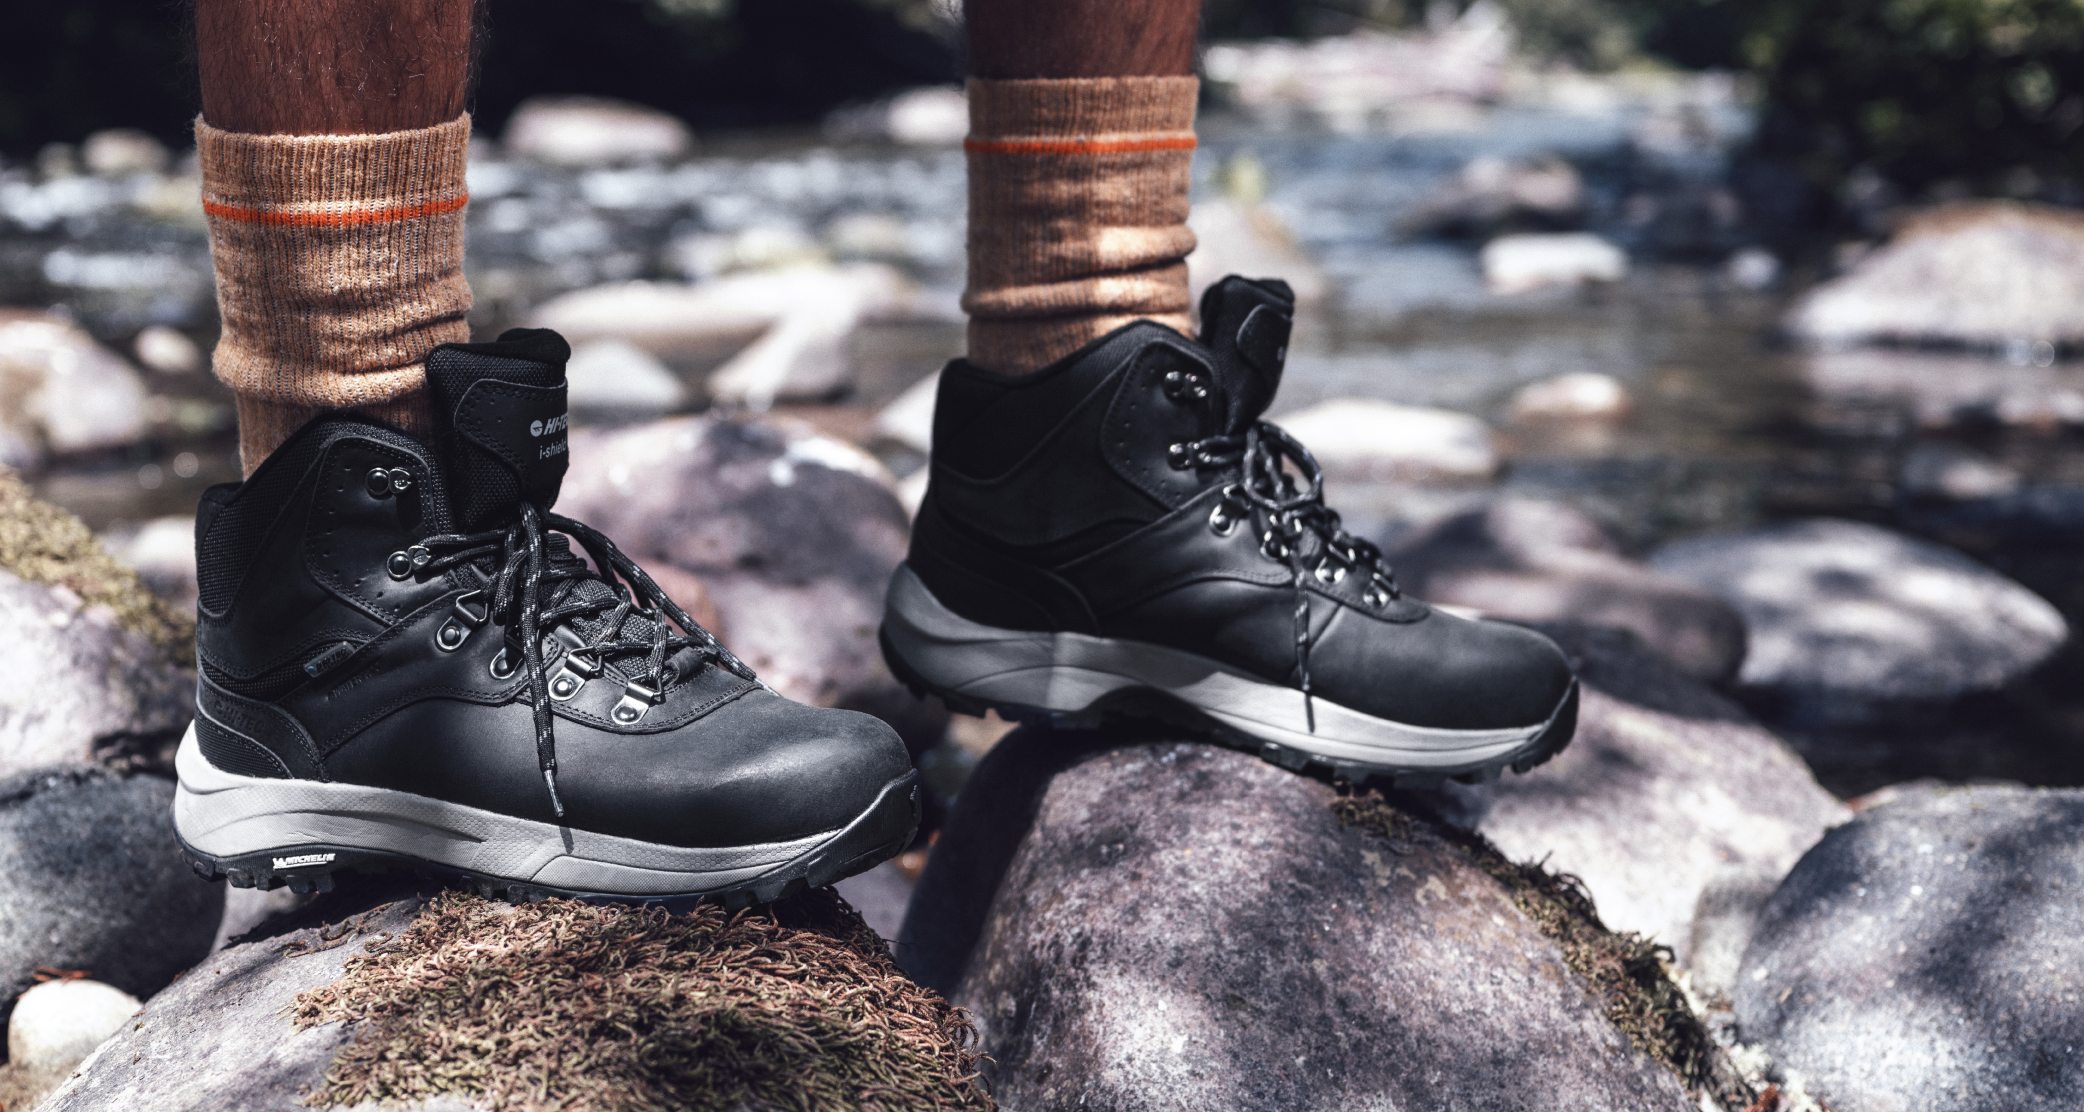 Cheap Men's Waterproof Hiking Boots Desert boots Lightweight Boots